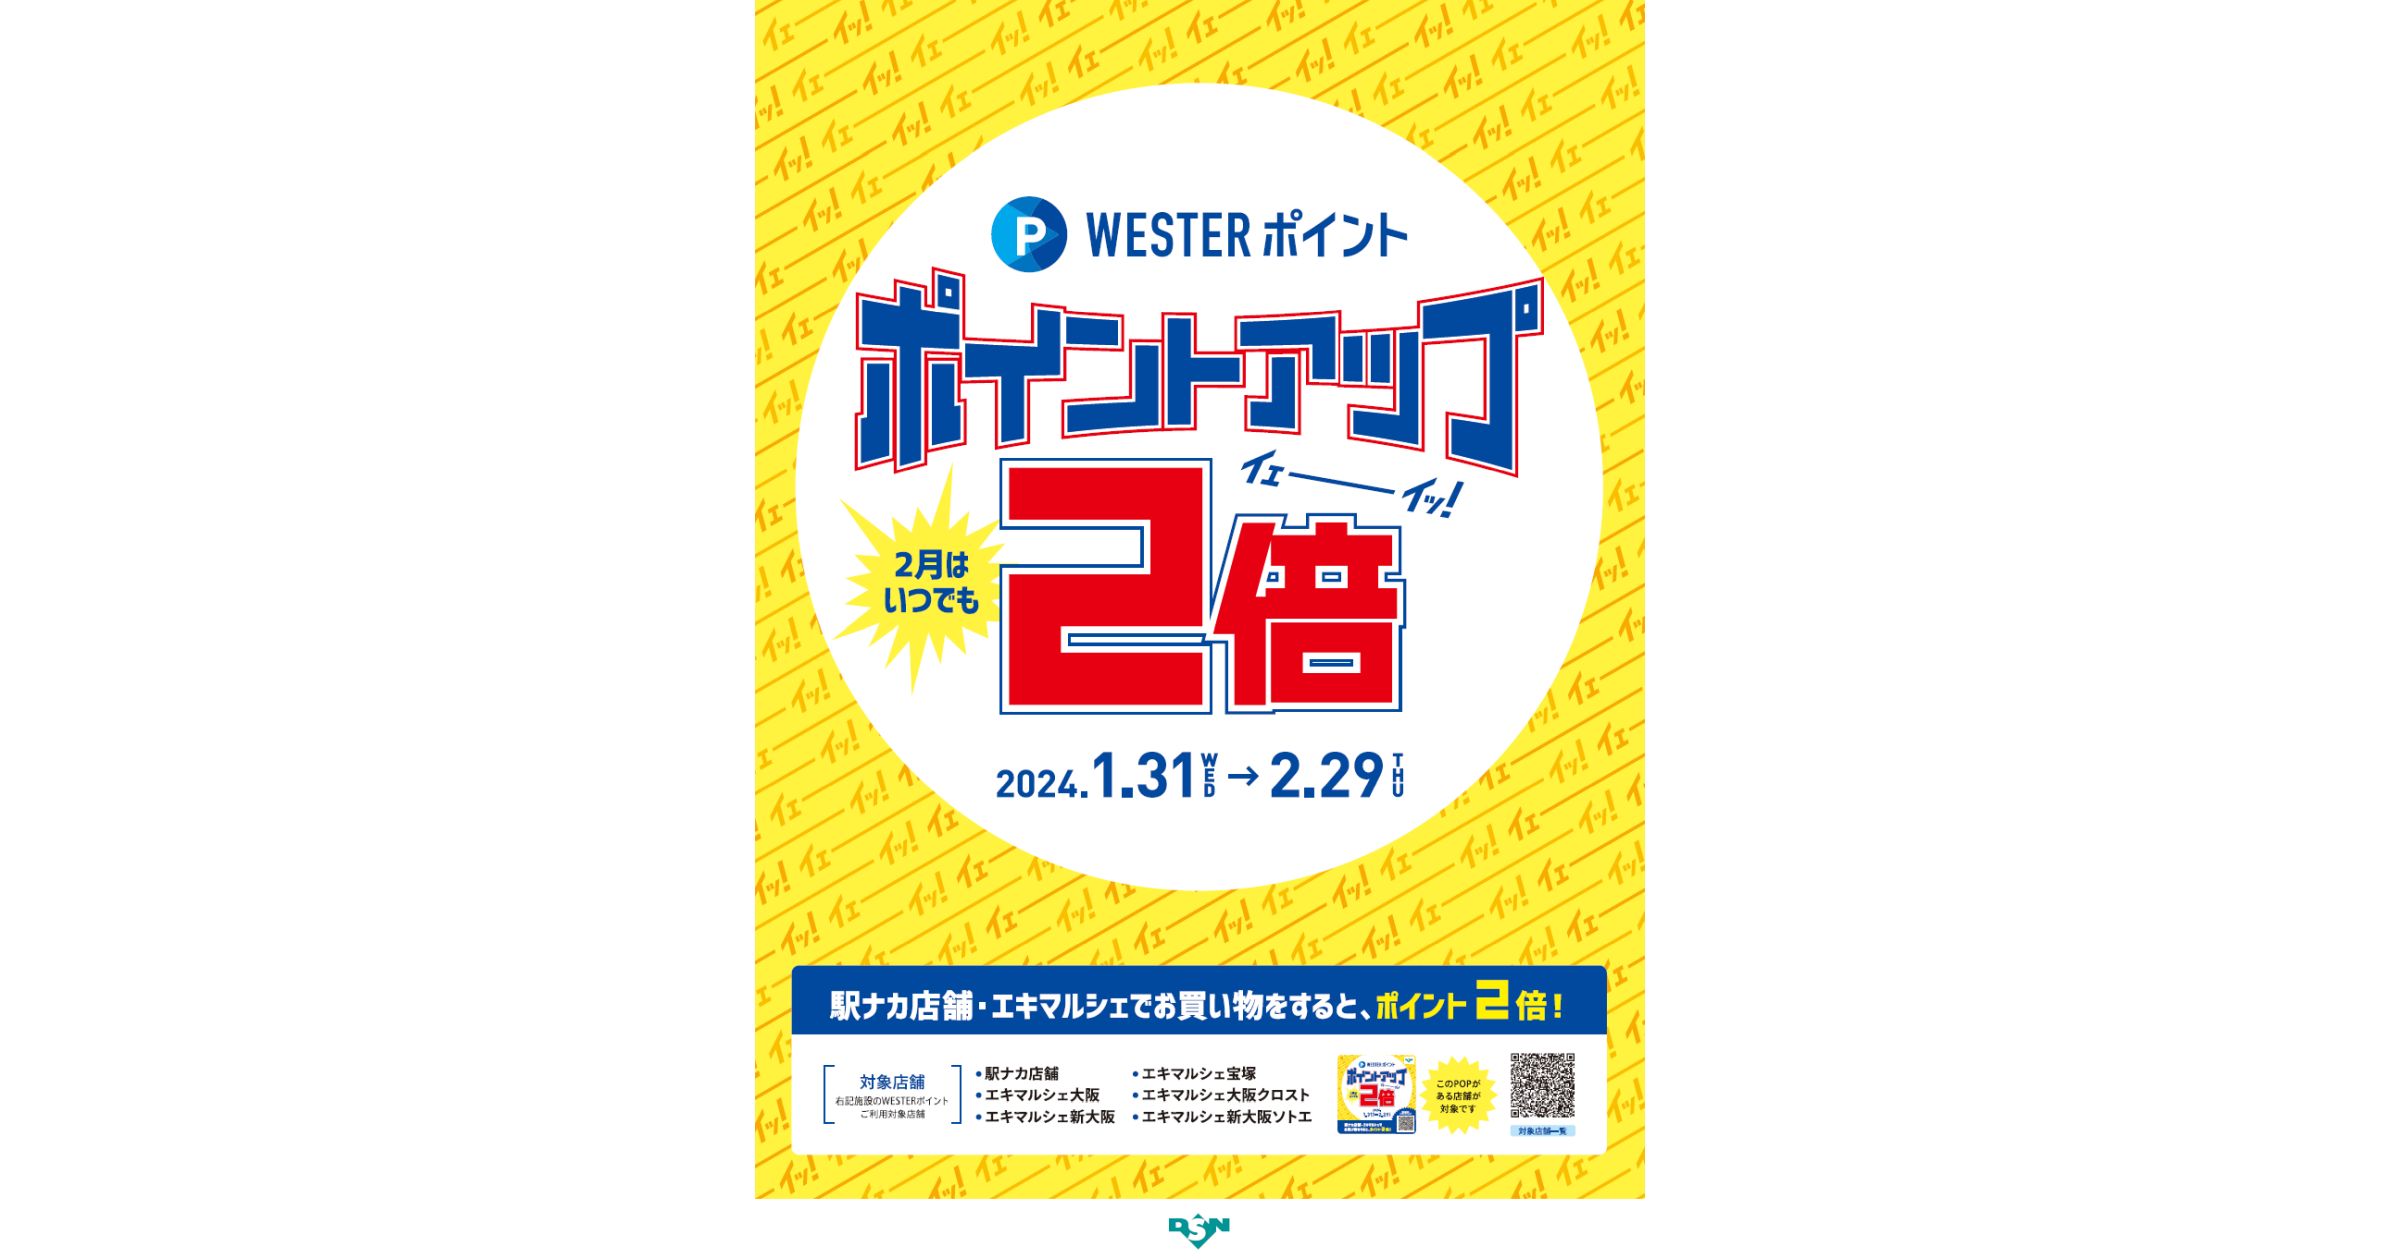 エキマルシェ・JR西日本エキナカ店舗でWESTERポイント2倍キャンペーン実施